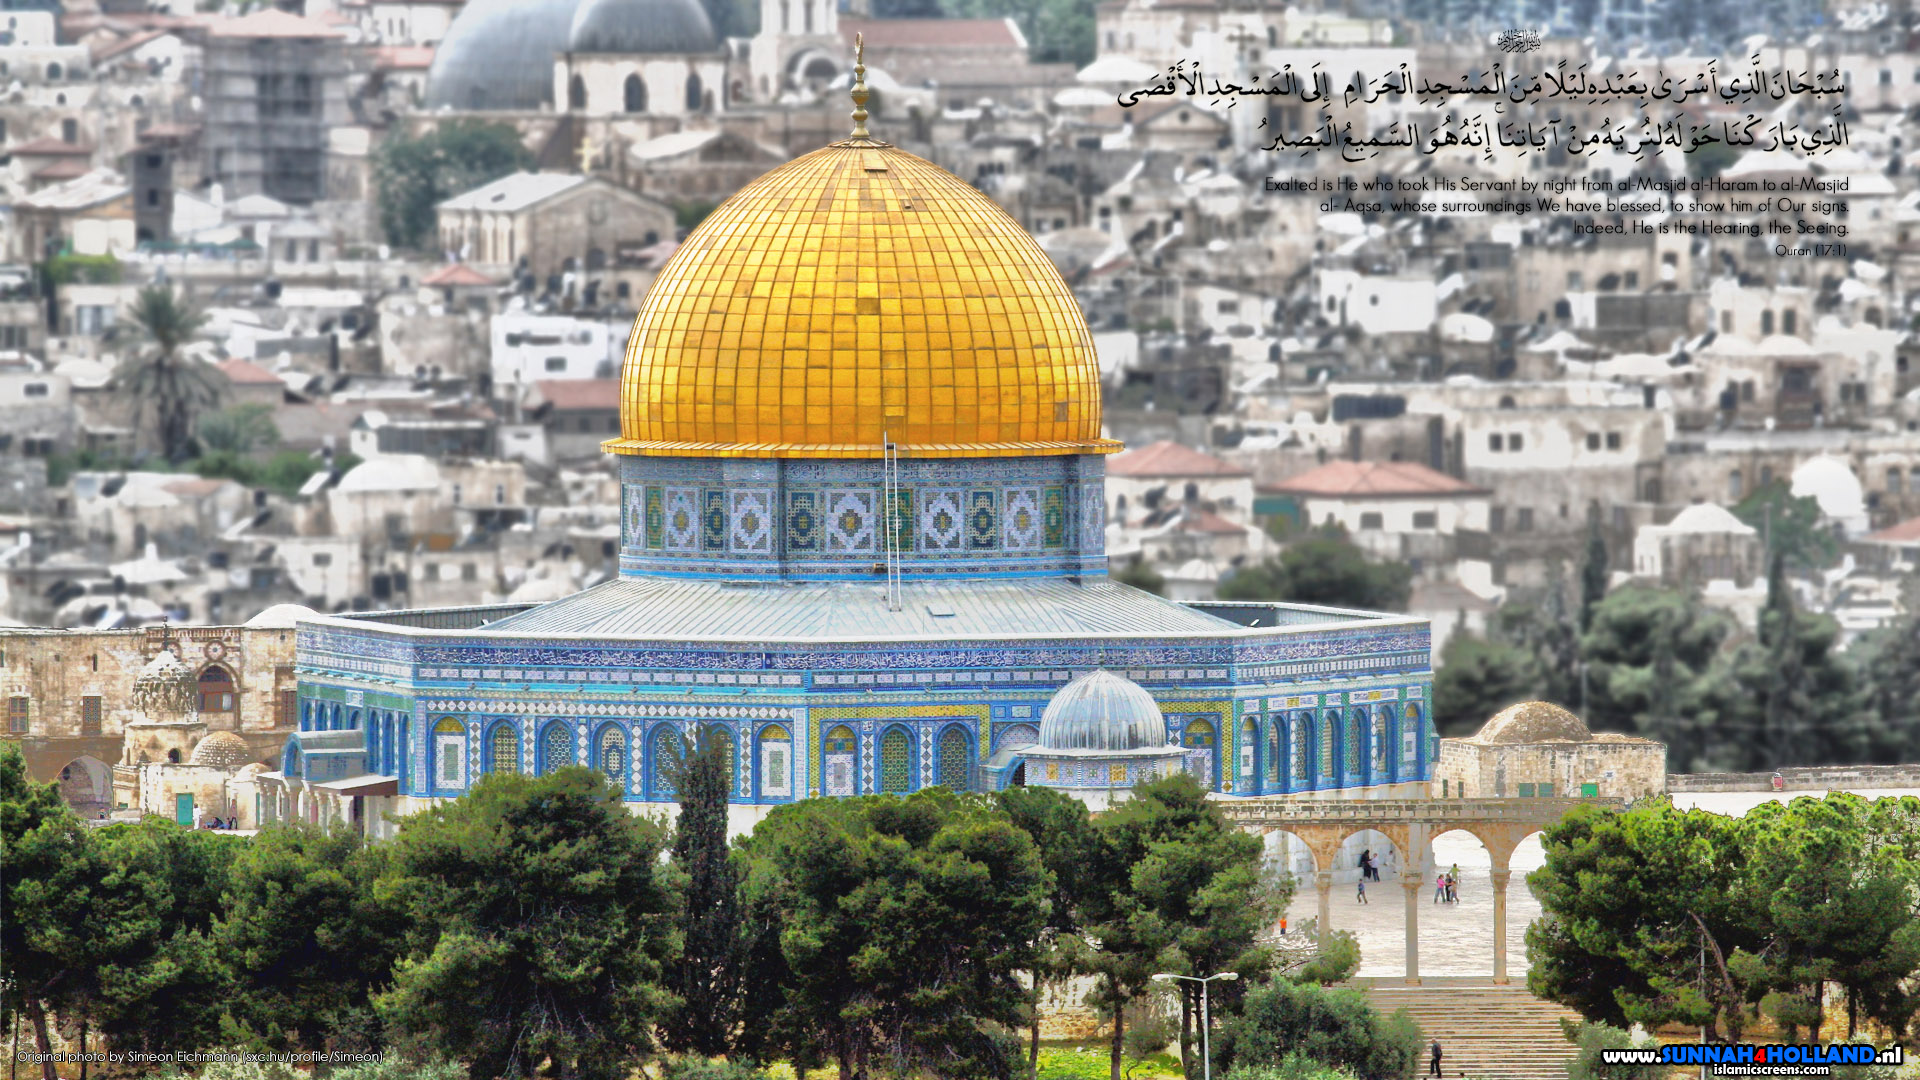 Find more Masjid Al Aqsa Dome of the rock Wallpaper. 